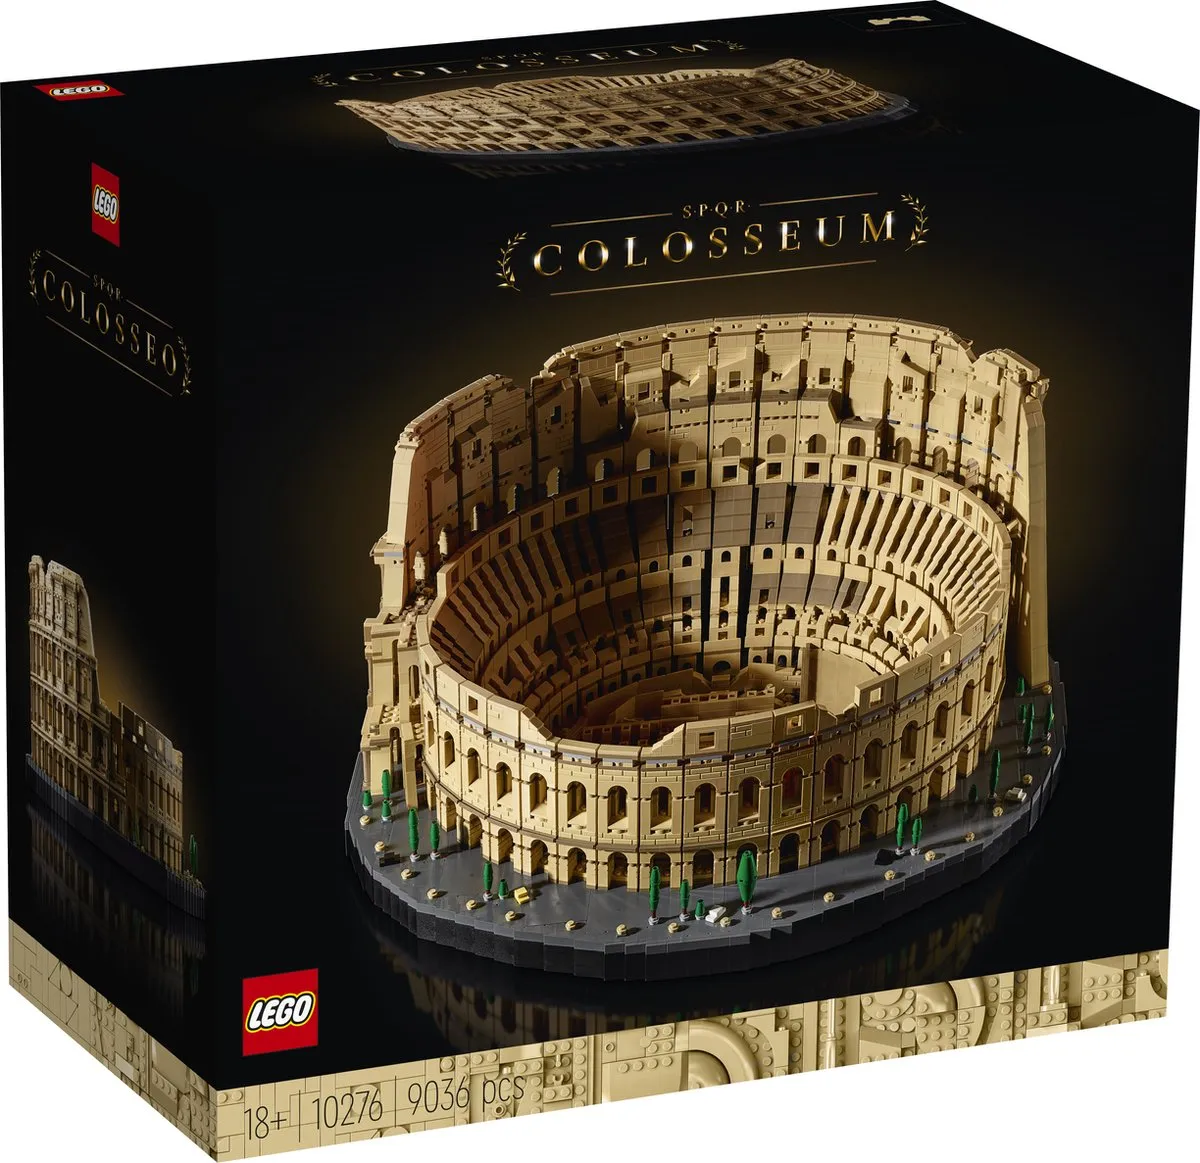 LEGO Creator Expert Colosseum - 10276 speelgoed